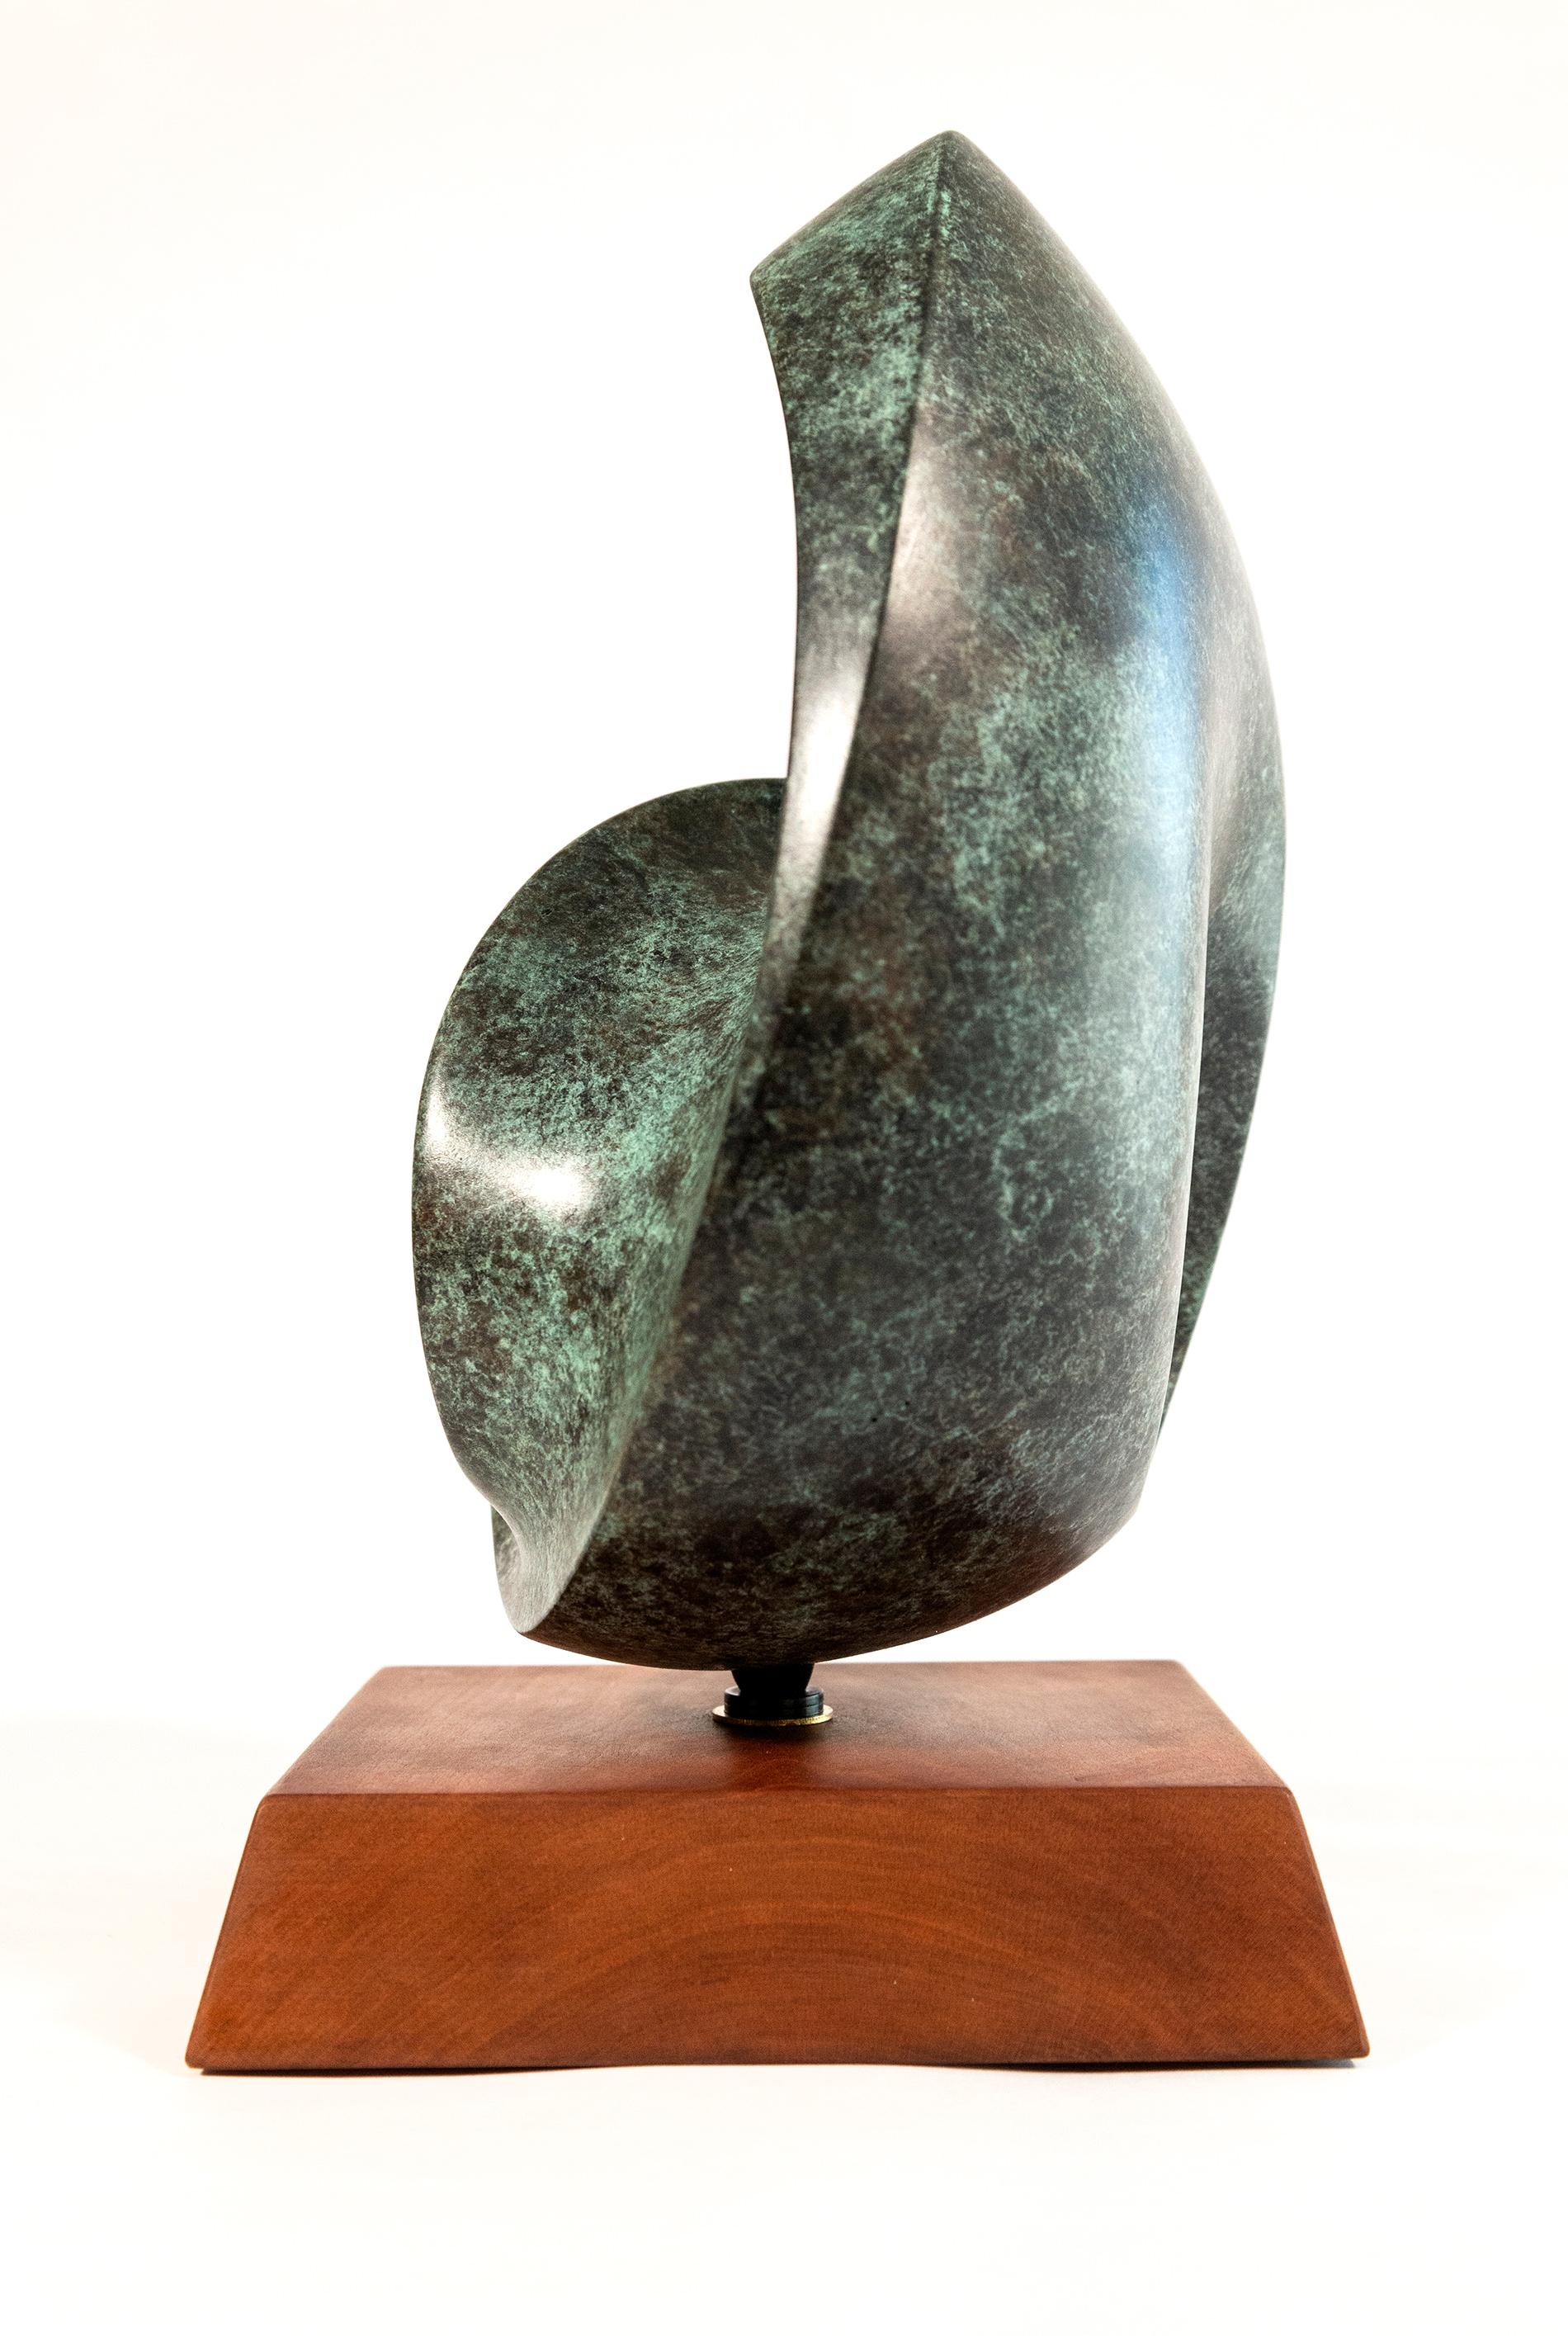 À la fois expressive et élégante, cette sculpture abstraite en bronze est l'œuvre de David Chamberlain. La forme contemporaine rappelle celle d'une demi-lune et semble être une surface continue. Les sculptures de Chamberlain se distinguent par cette